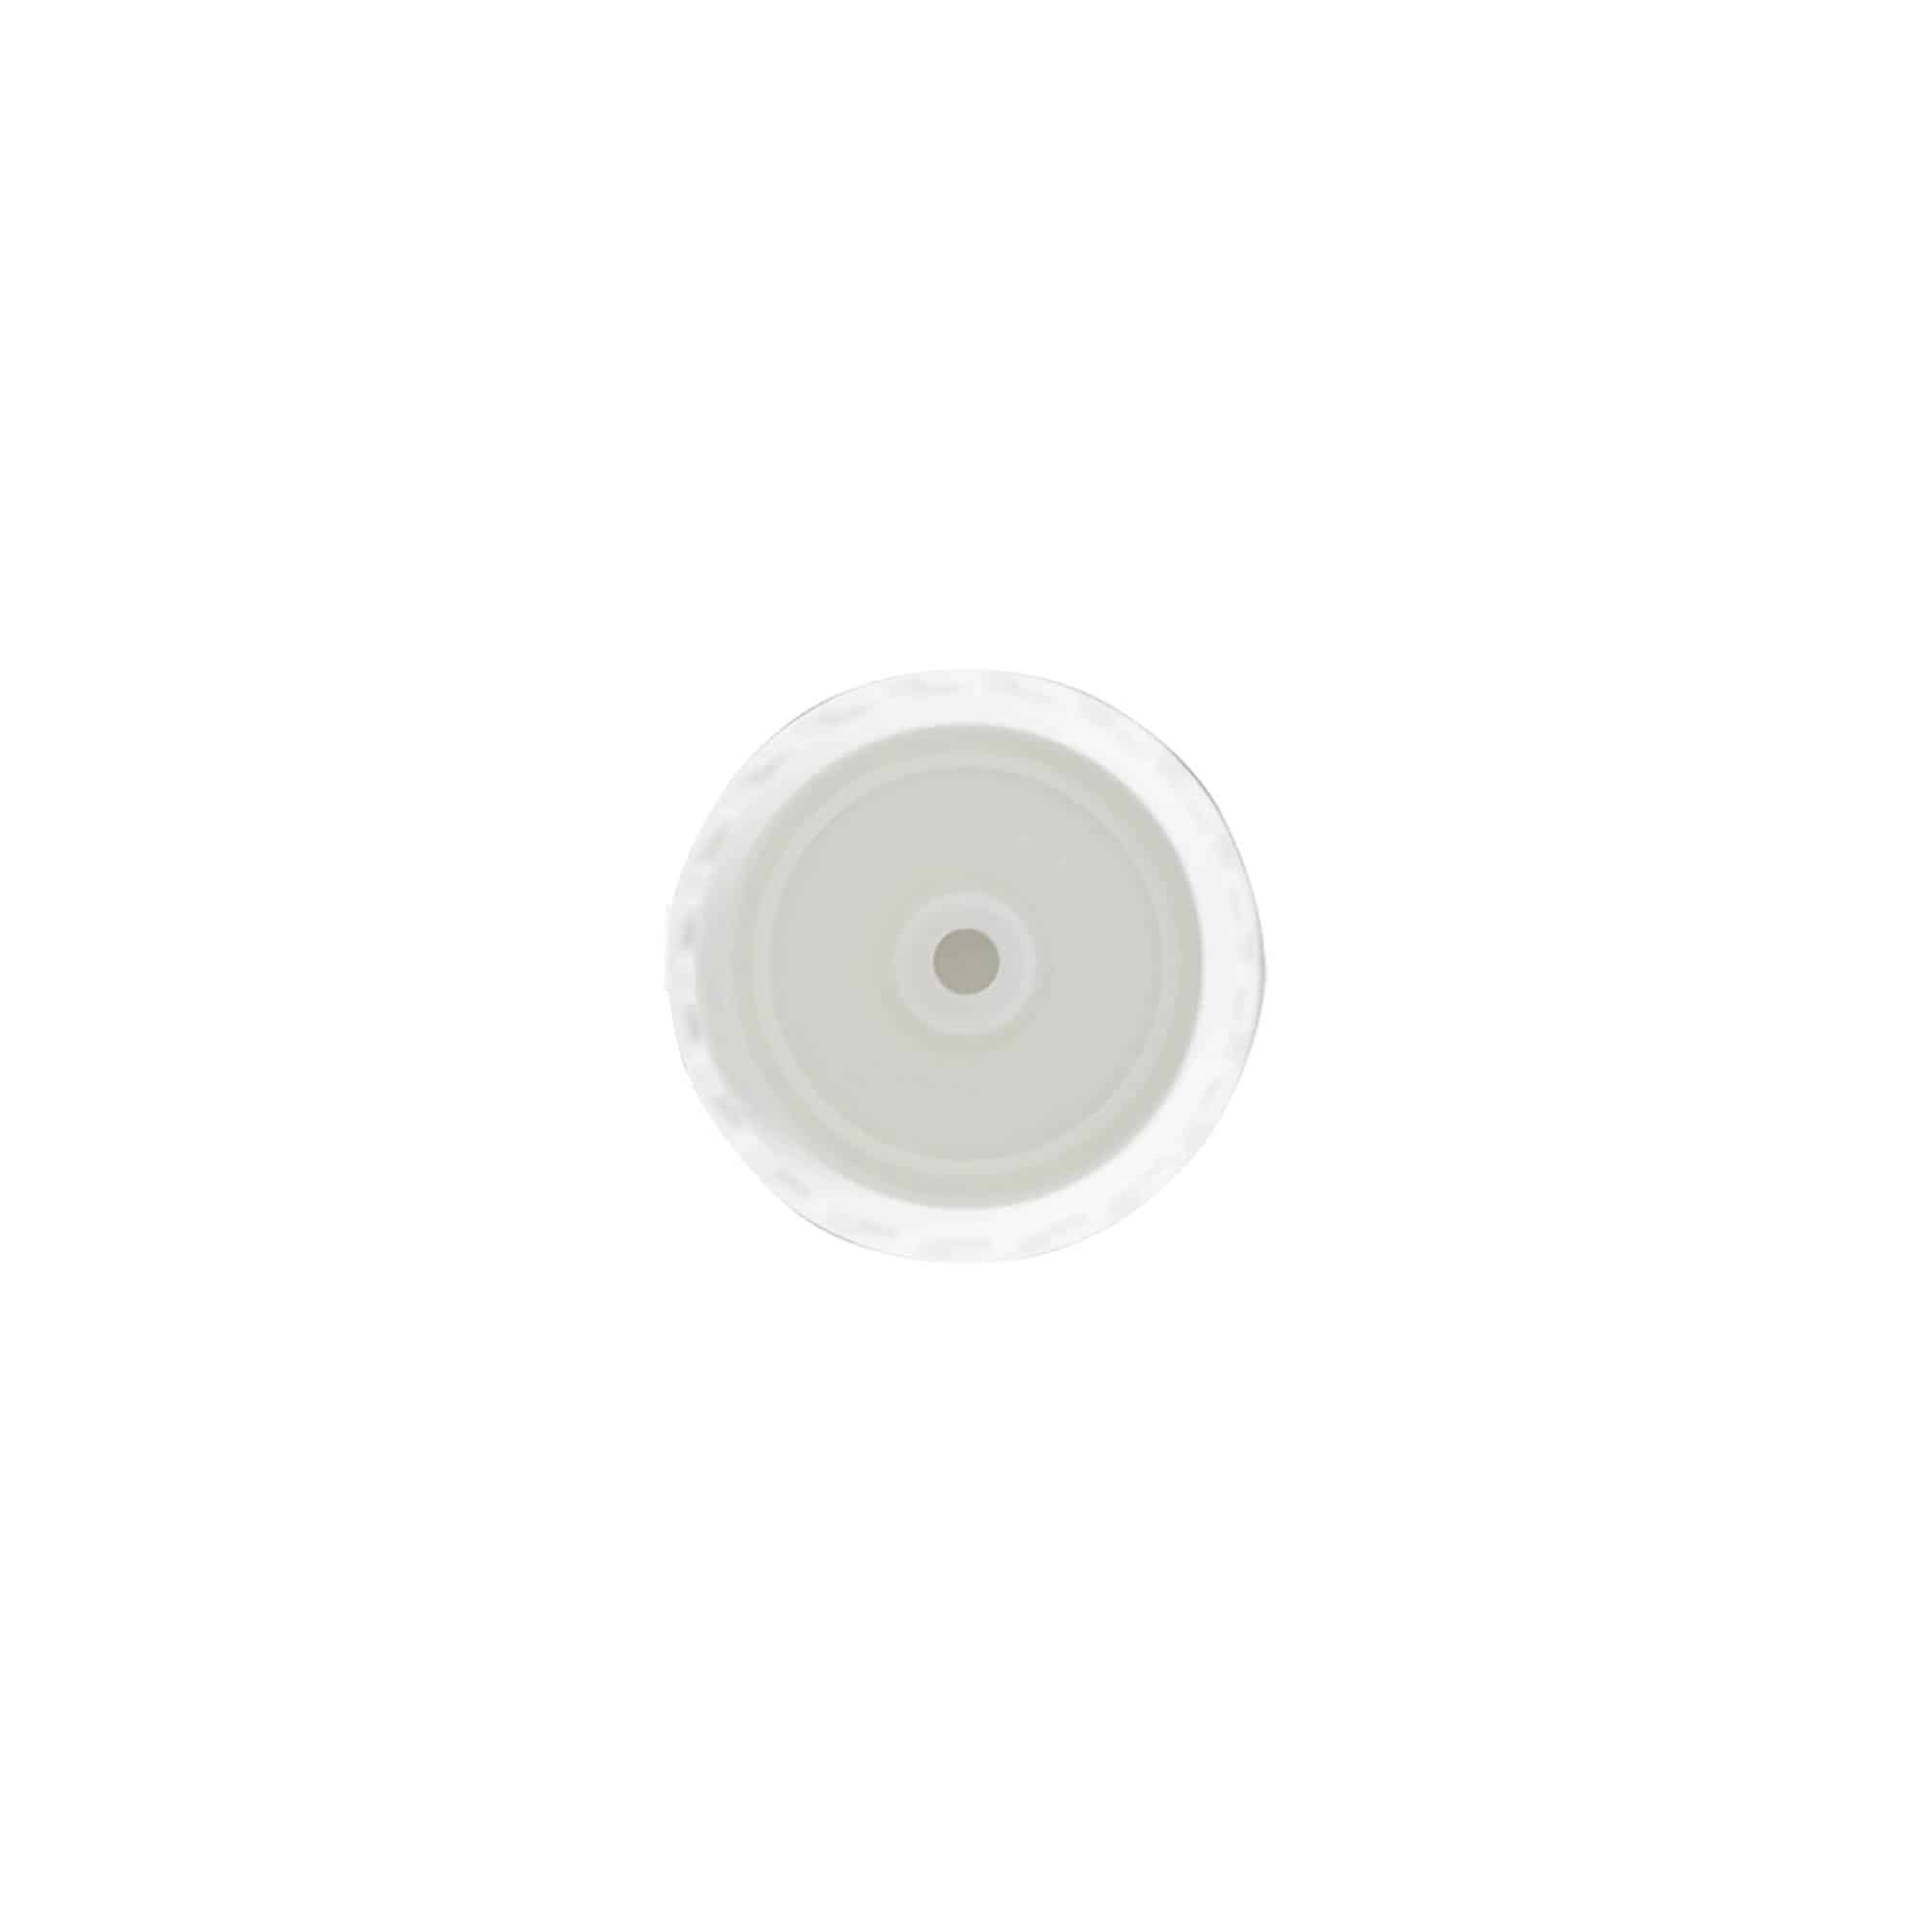 Šroubovací uzávěr s výklopnou krytkou, plast PP, bílý, pro ústí: GPI 24/410